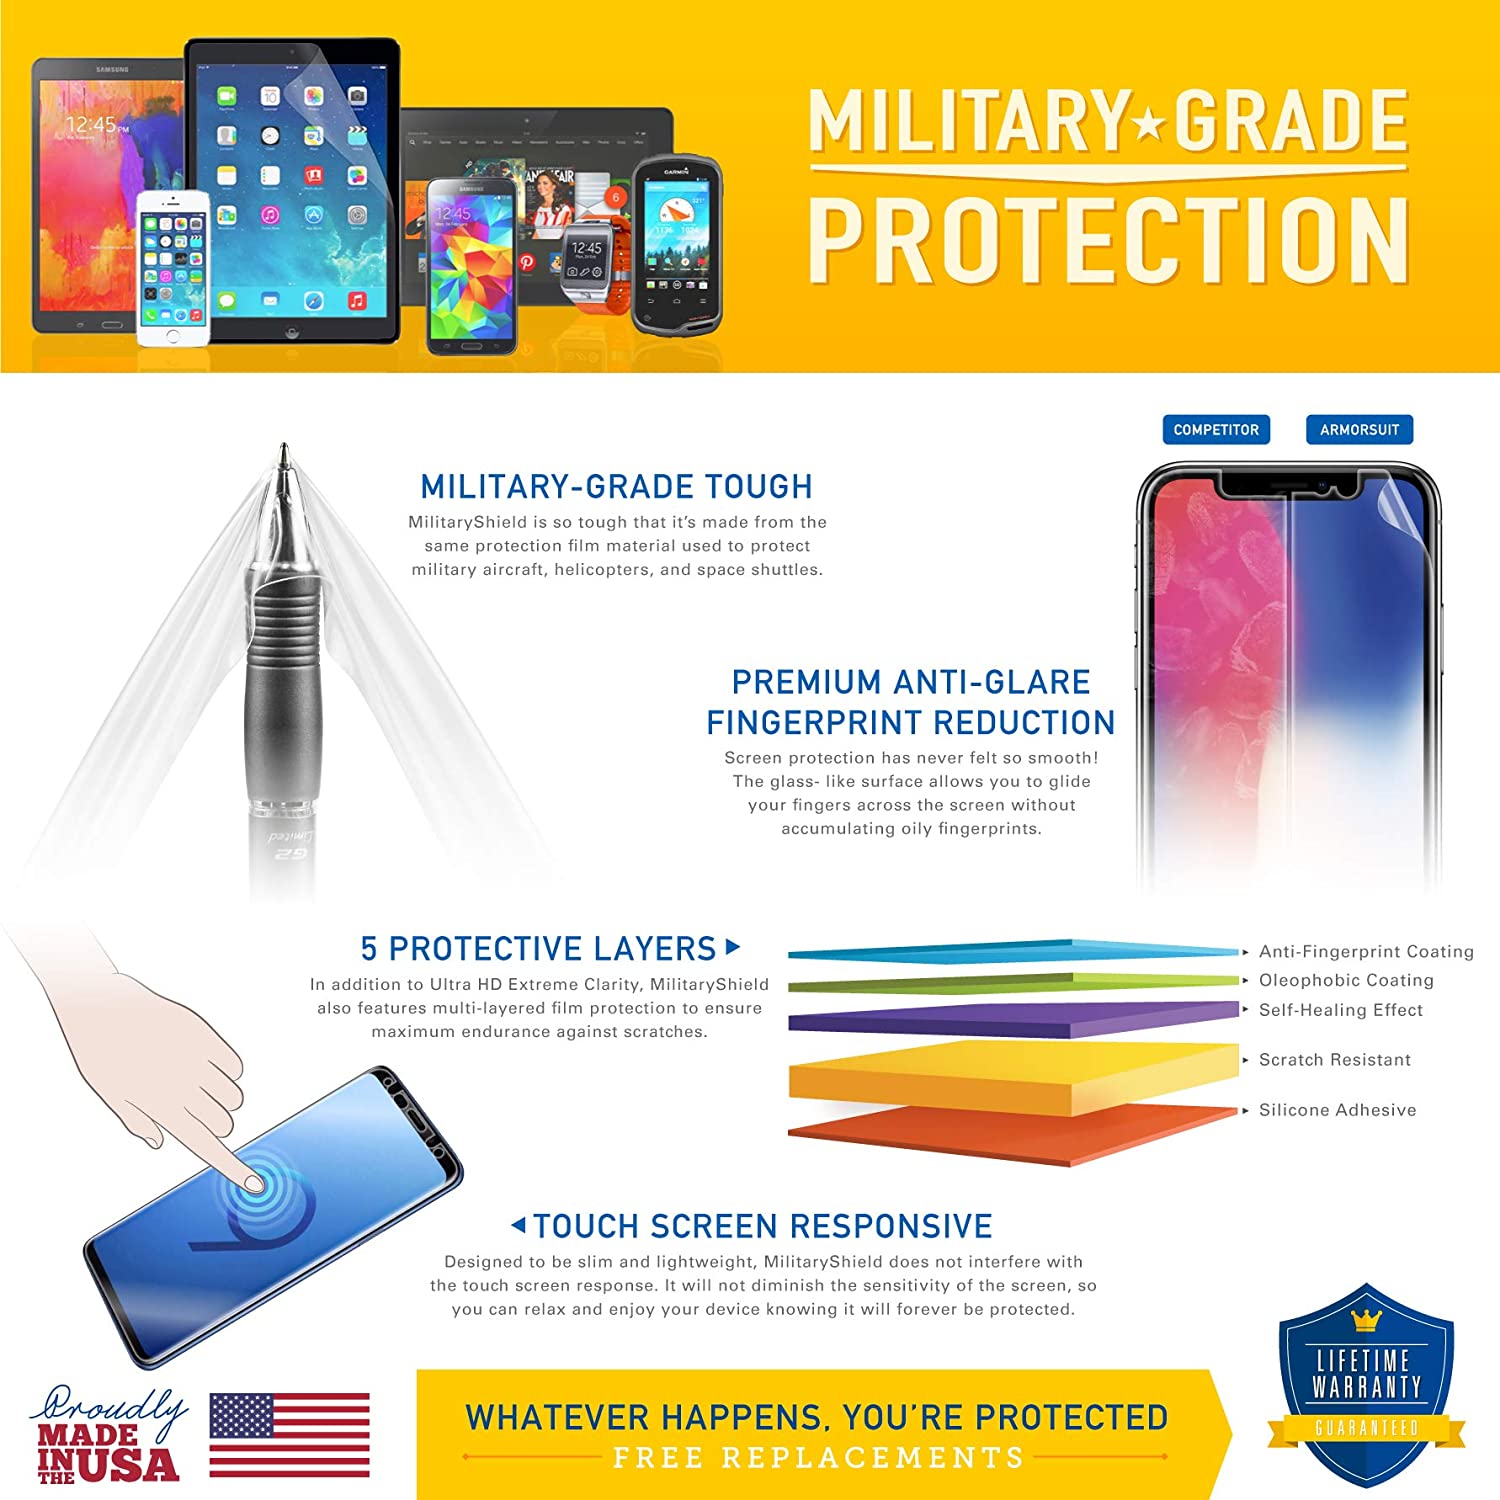 Samsung Galaxy Tab E 9.6" Anti-Glare (Matte) Screen Protector